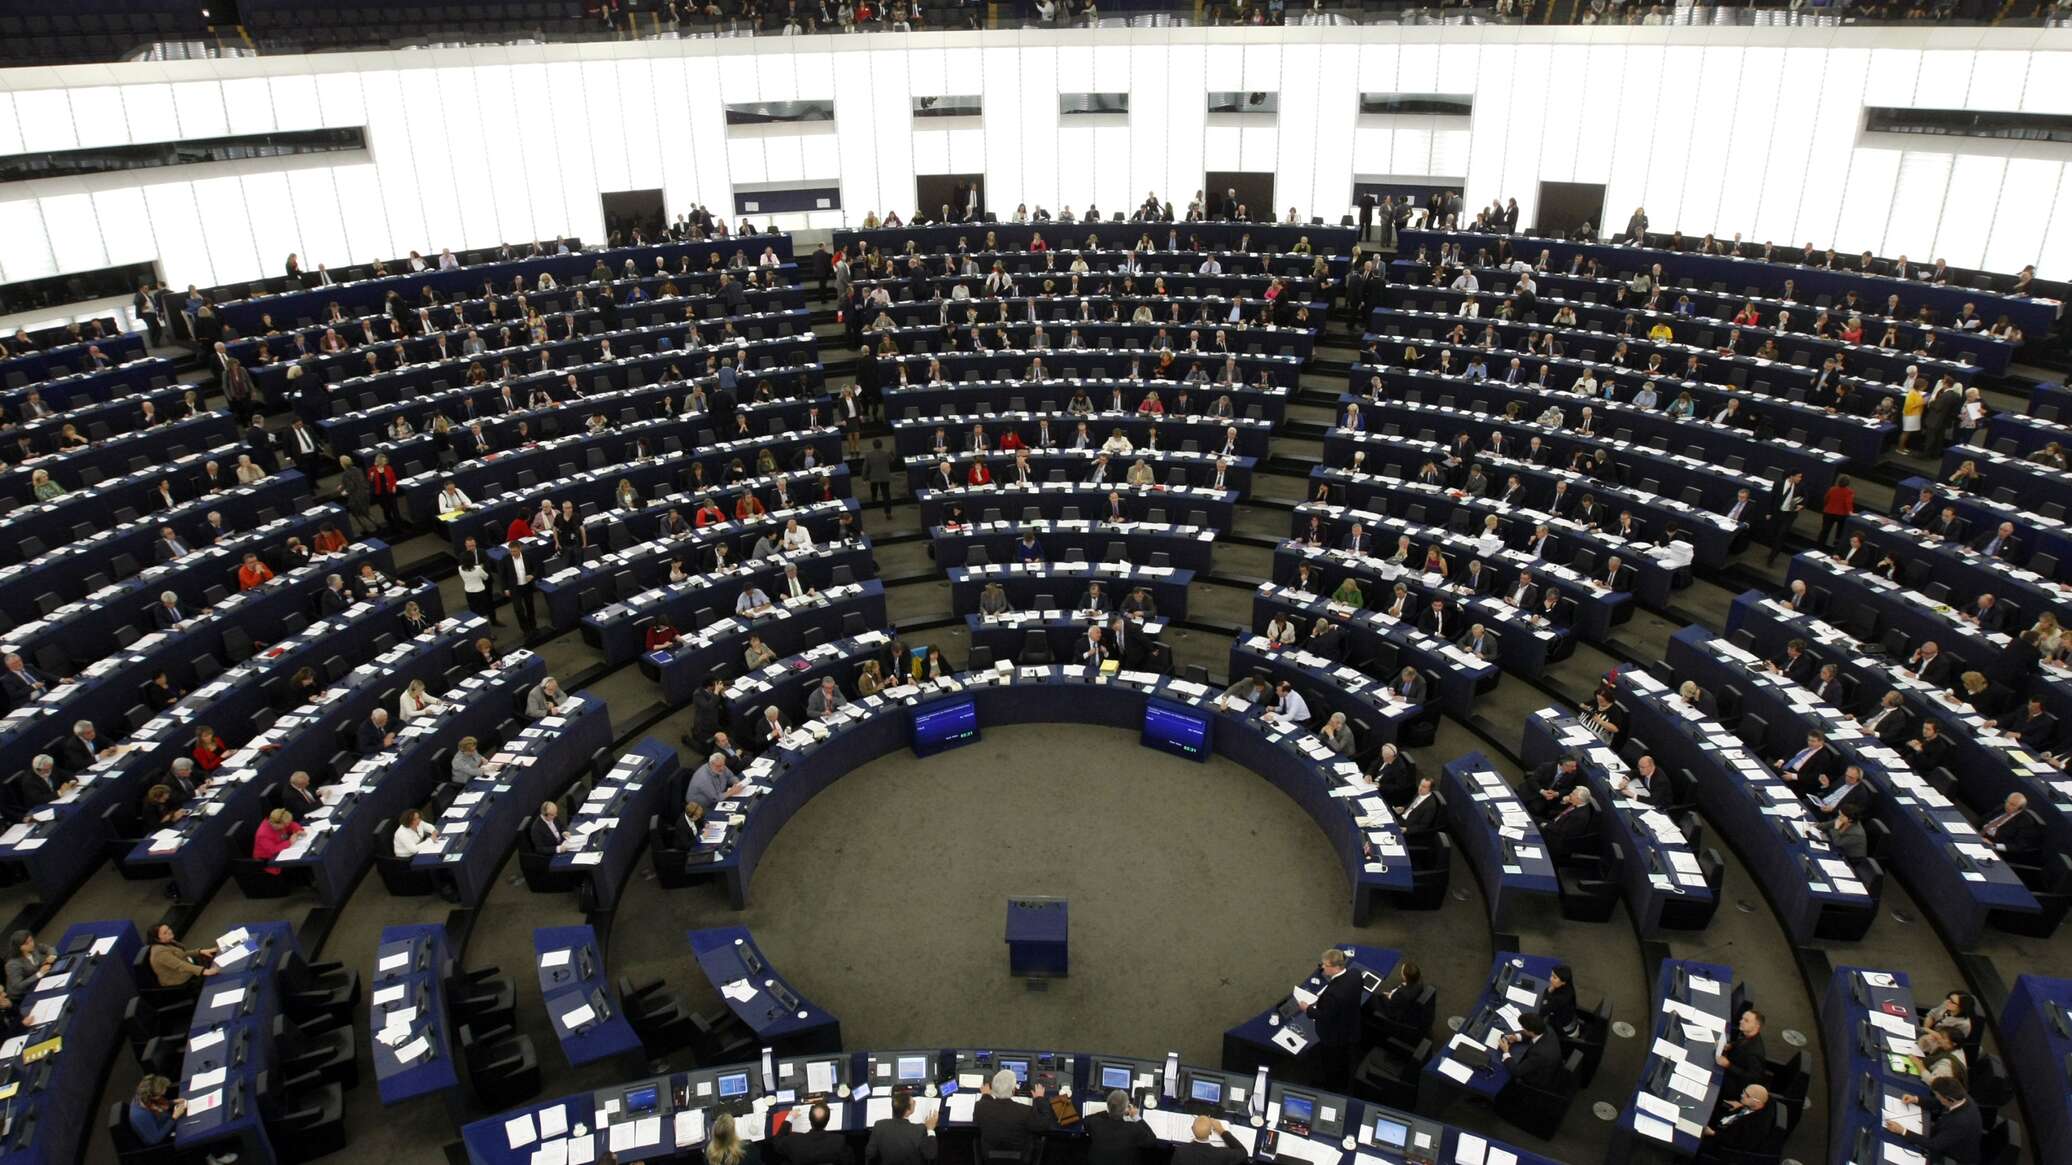 برلمانيون عرب: تدخل البرلمان الأوروبي في شؤوننا "غير مقبول" وينم عن "نظرة استعمارية"